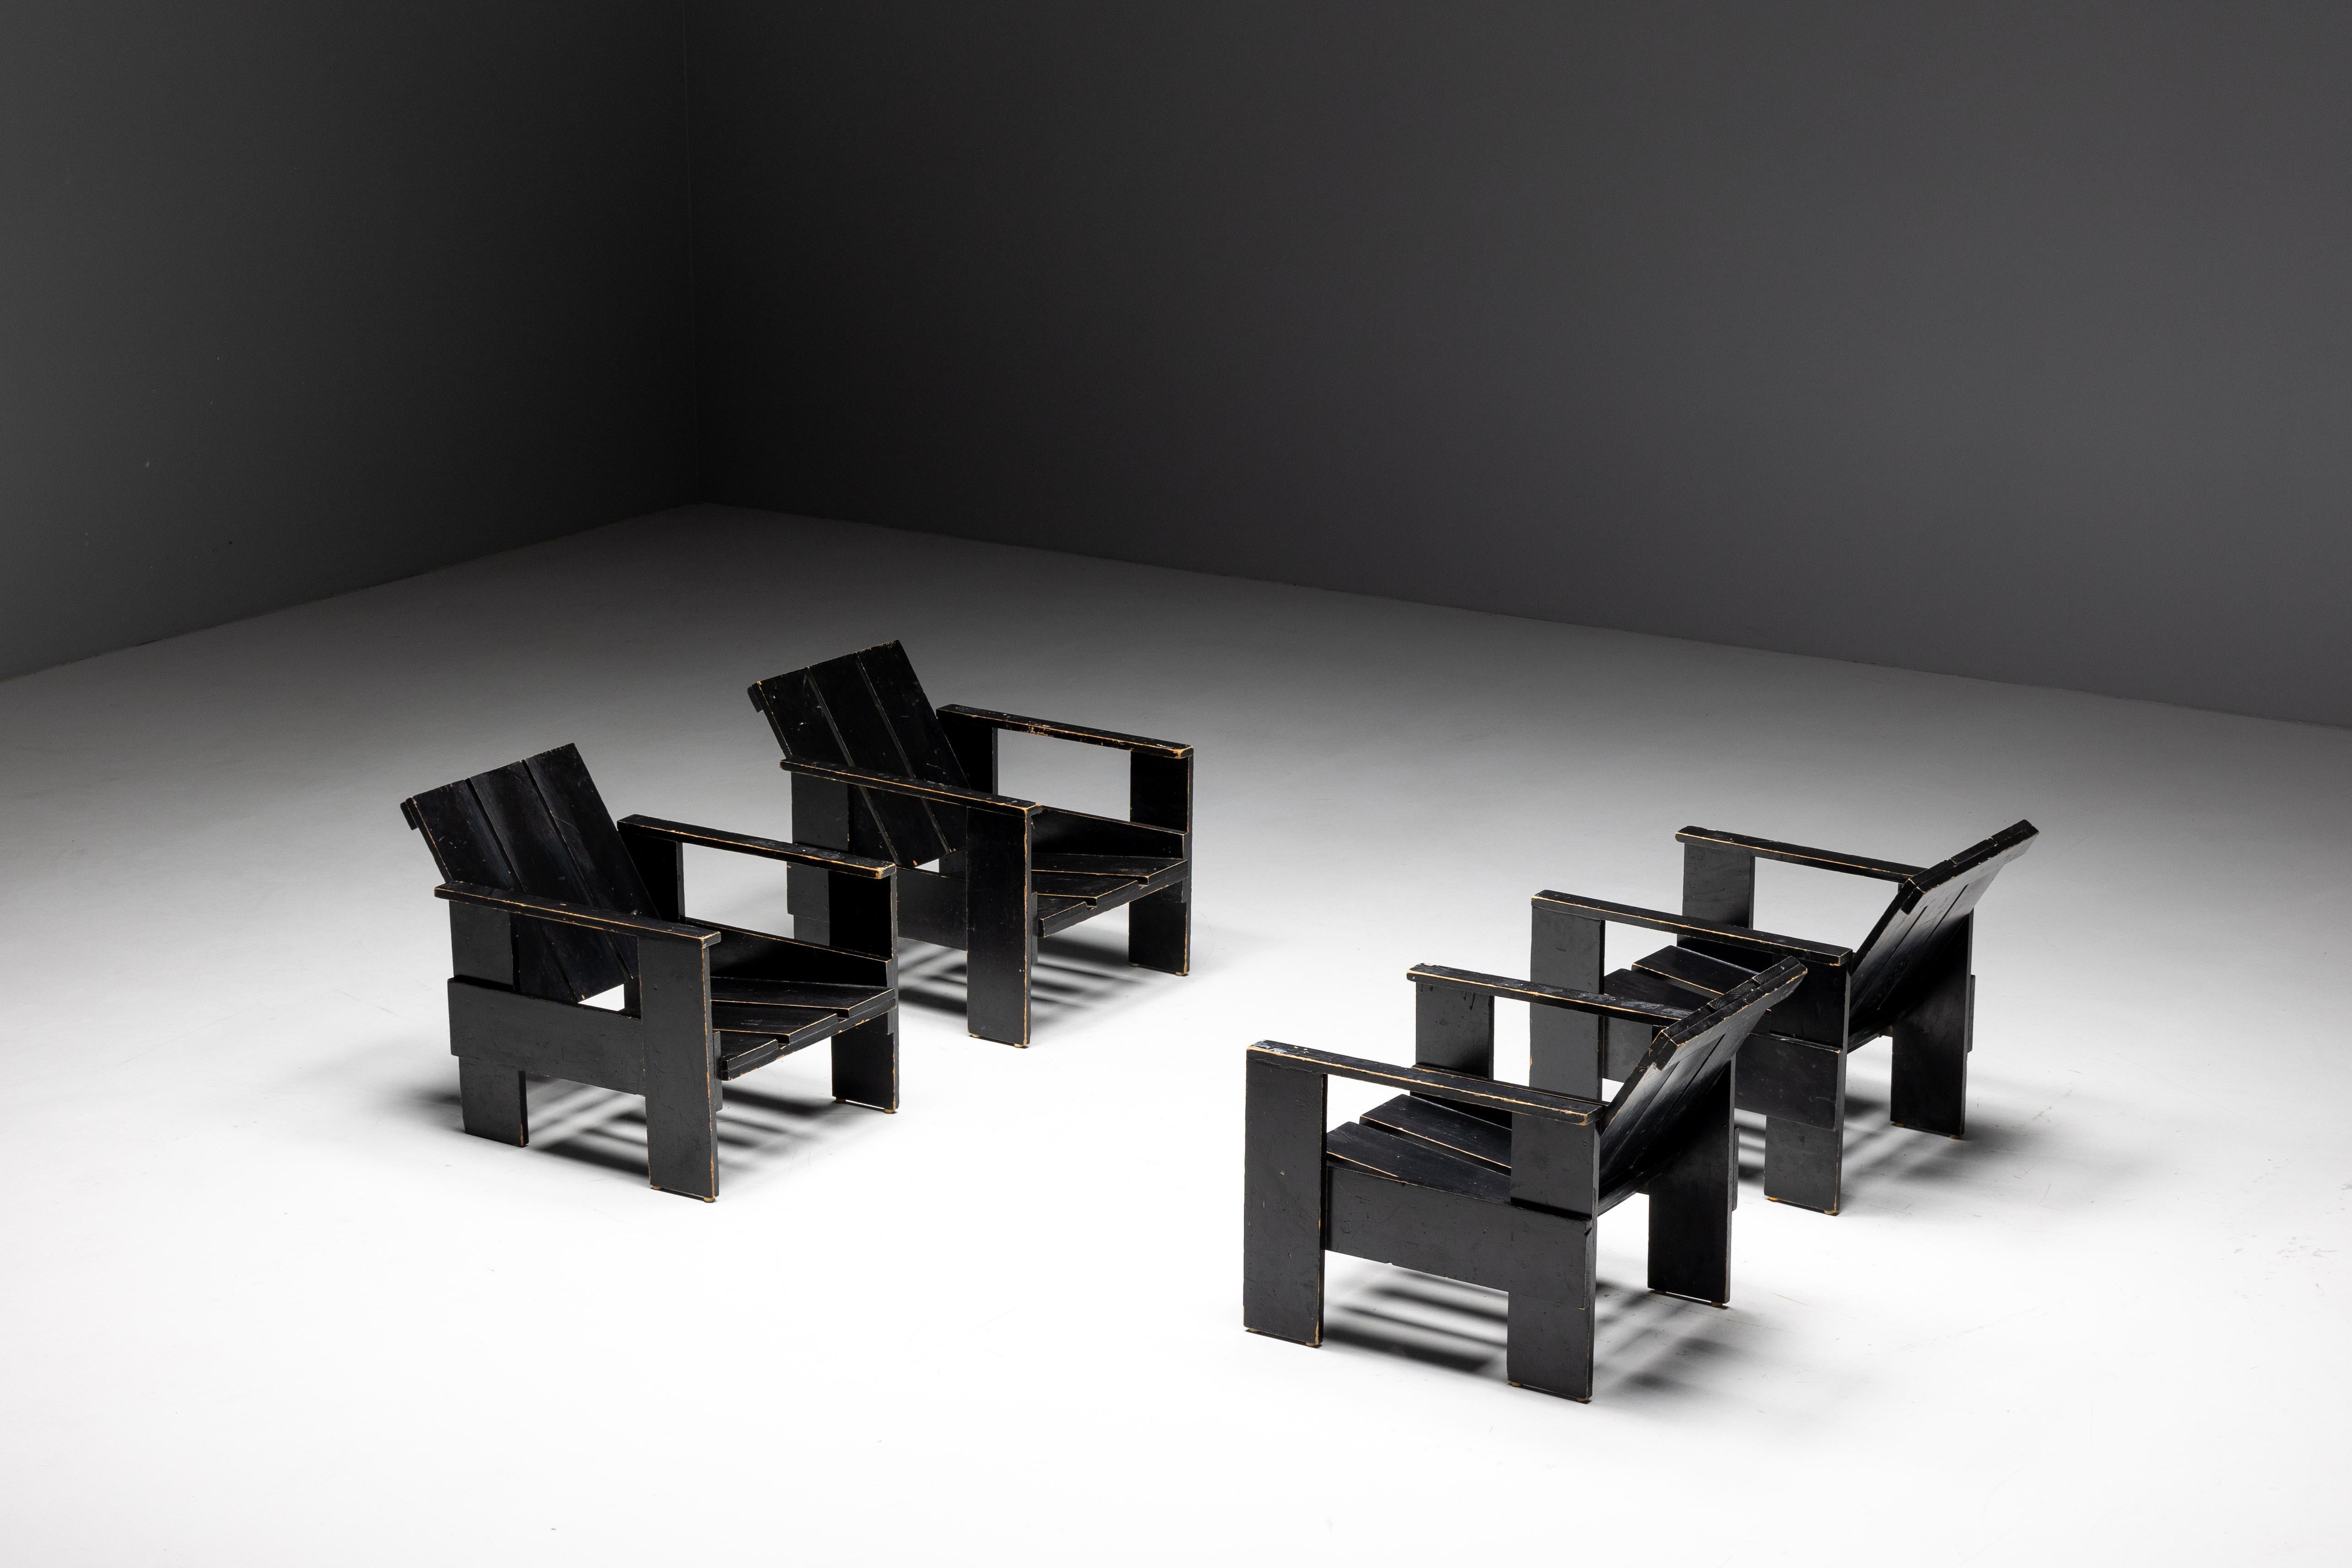 Die schwarzen Kistenstühle von Gerrit Rietveld, die um 1960 in den Niederlanden hergestellt wurden, sind ein Zeugnis von Rietvelds avantgardistischem Ansatz im Möbeldesign. Als Pionier der De Stijl-Bewegung revolutionierte Rietveld mit seinen